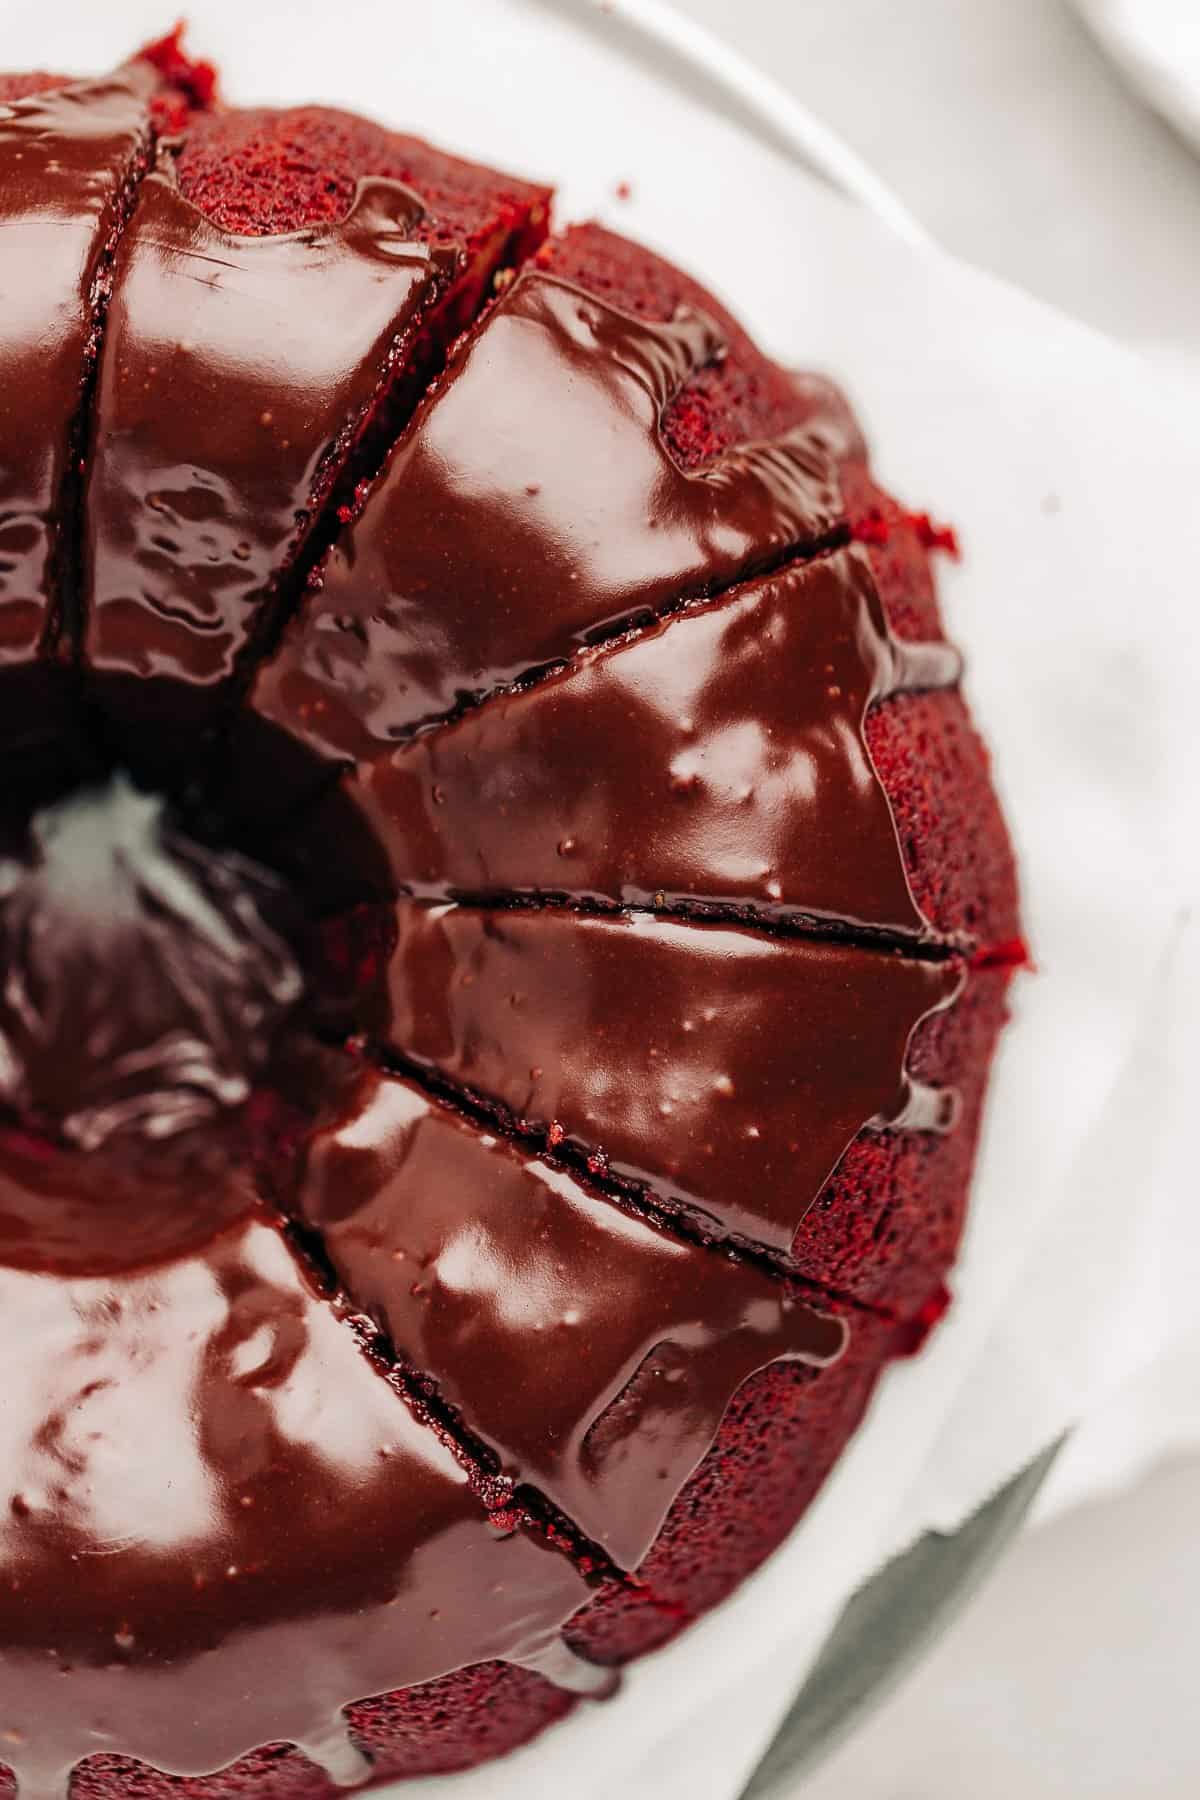 nutella glaze topped Red Velvet Bundt Cake.